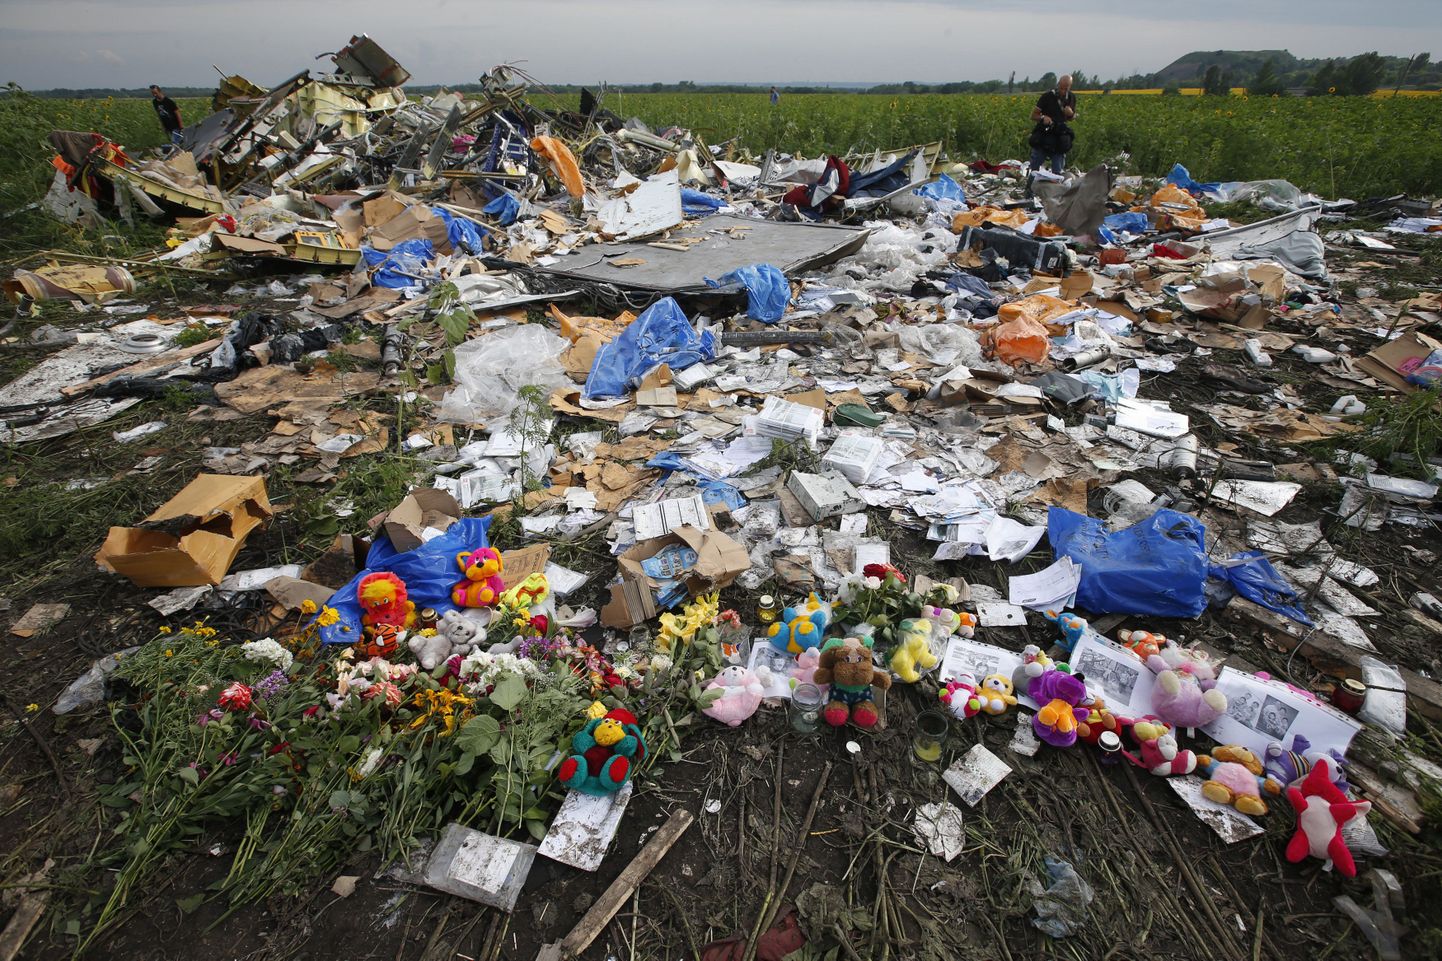 «Боинг-777», выполнявший рейс МН17 из Амстердама в Куала-Лумпур, 17 июля 2014 года был сбит над территорией восточной Украины.